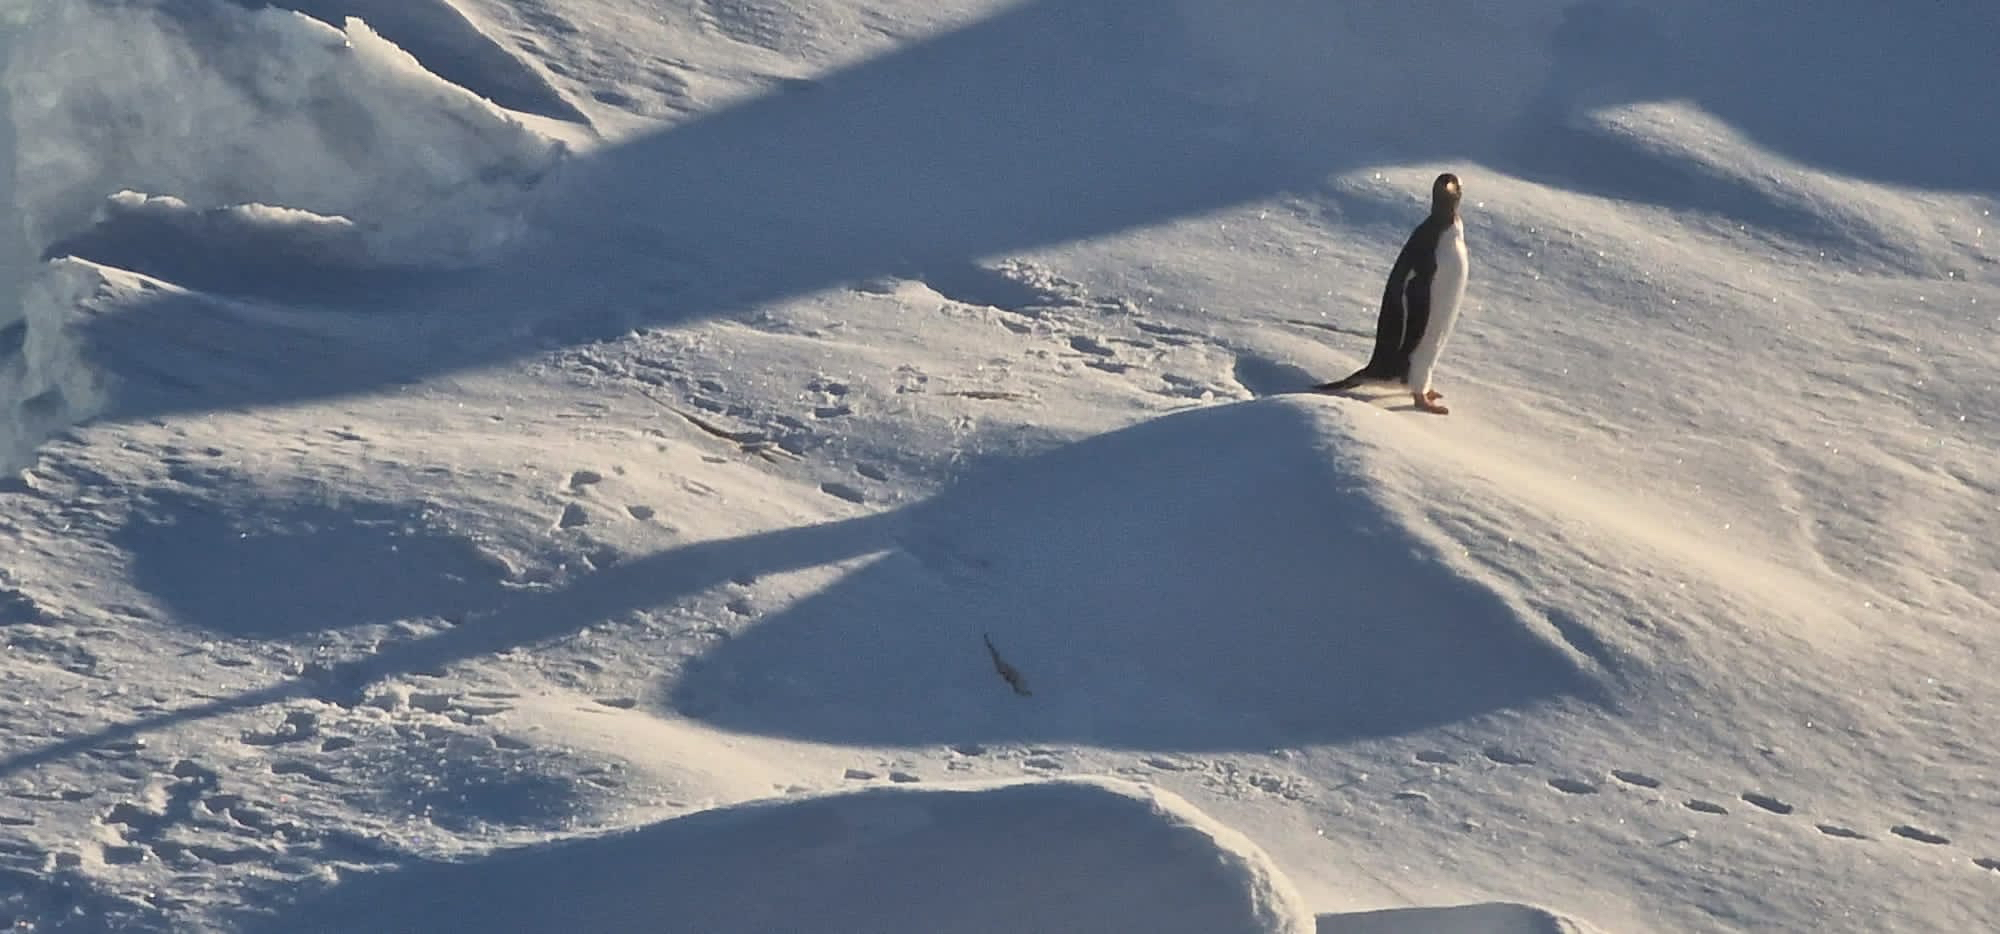 Pingüino Adelia. Fotografía de William Gregory 